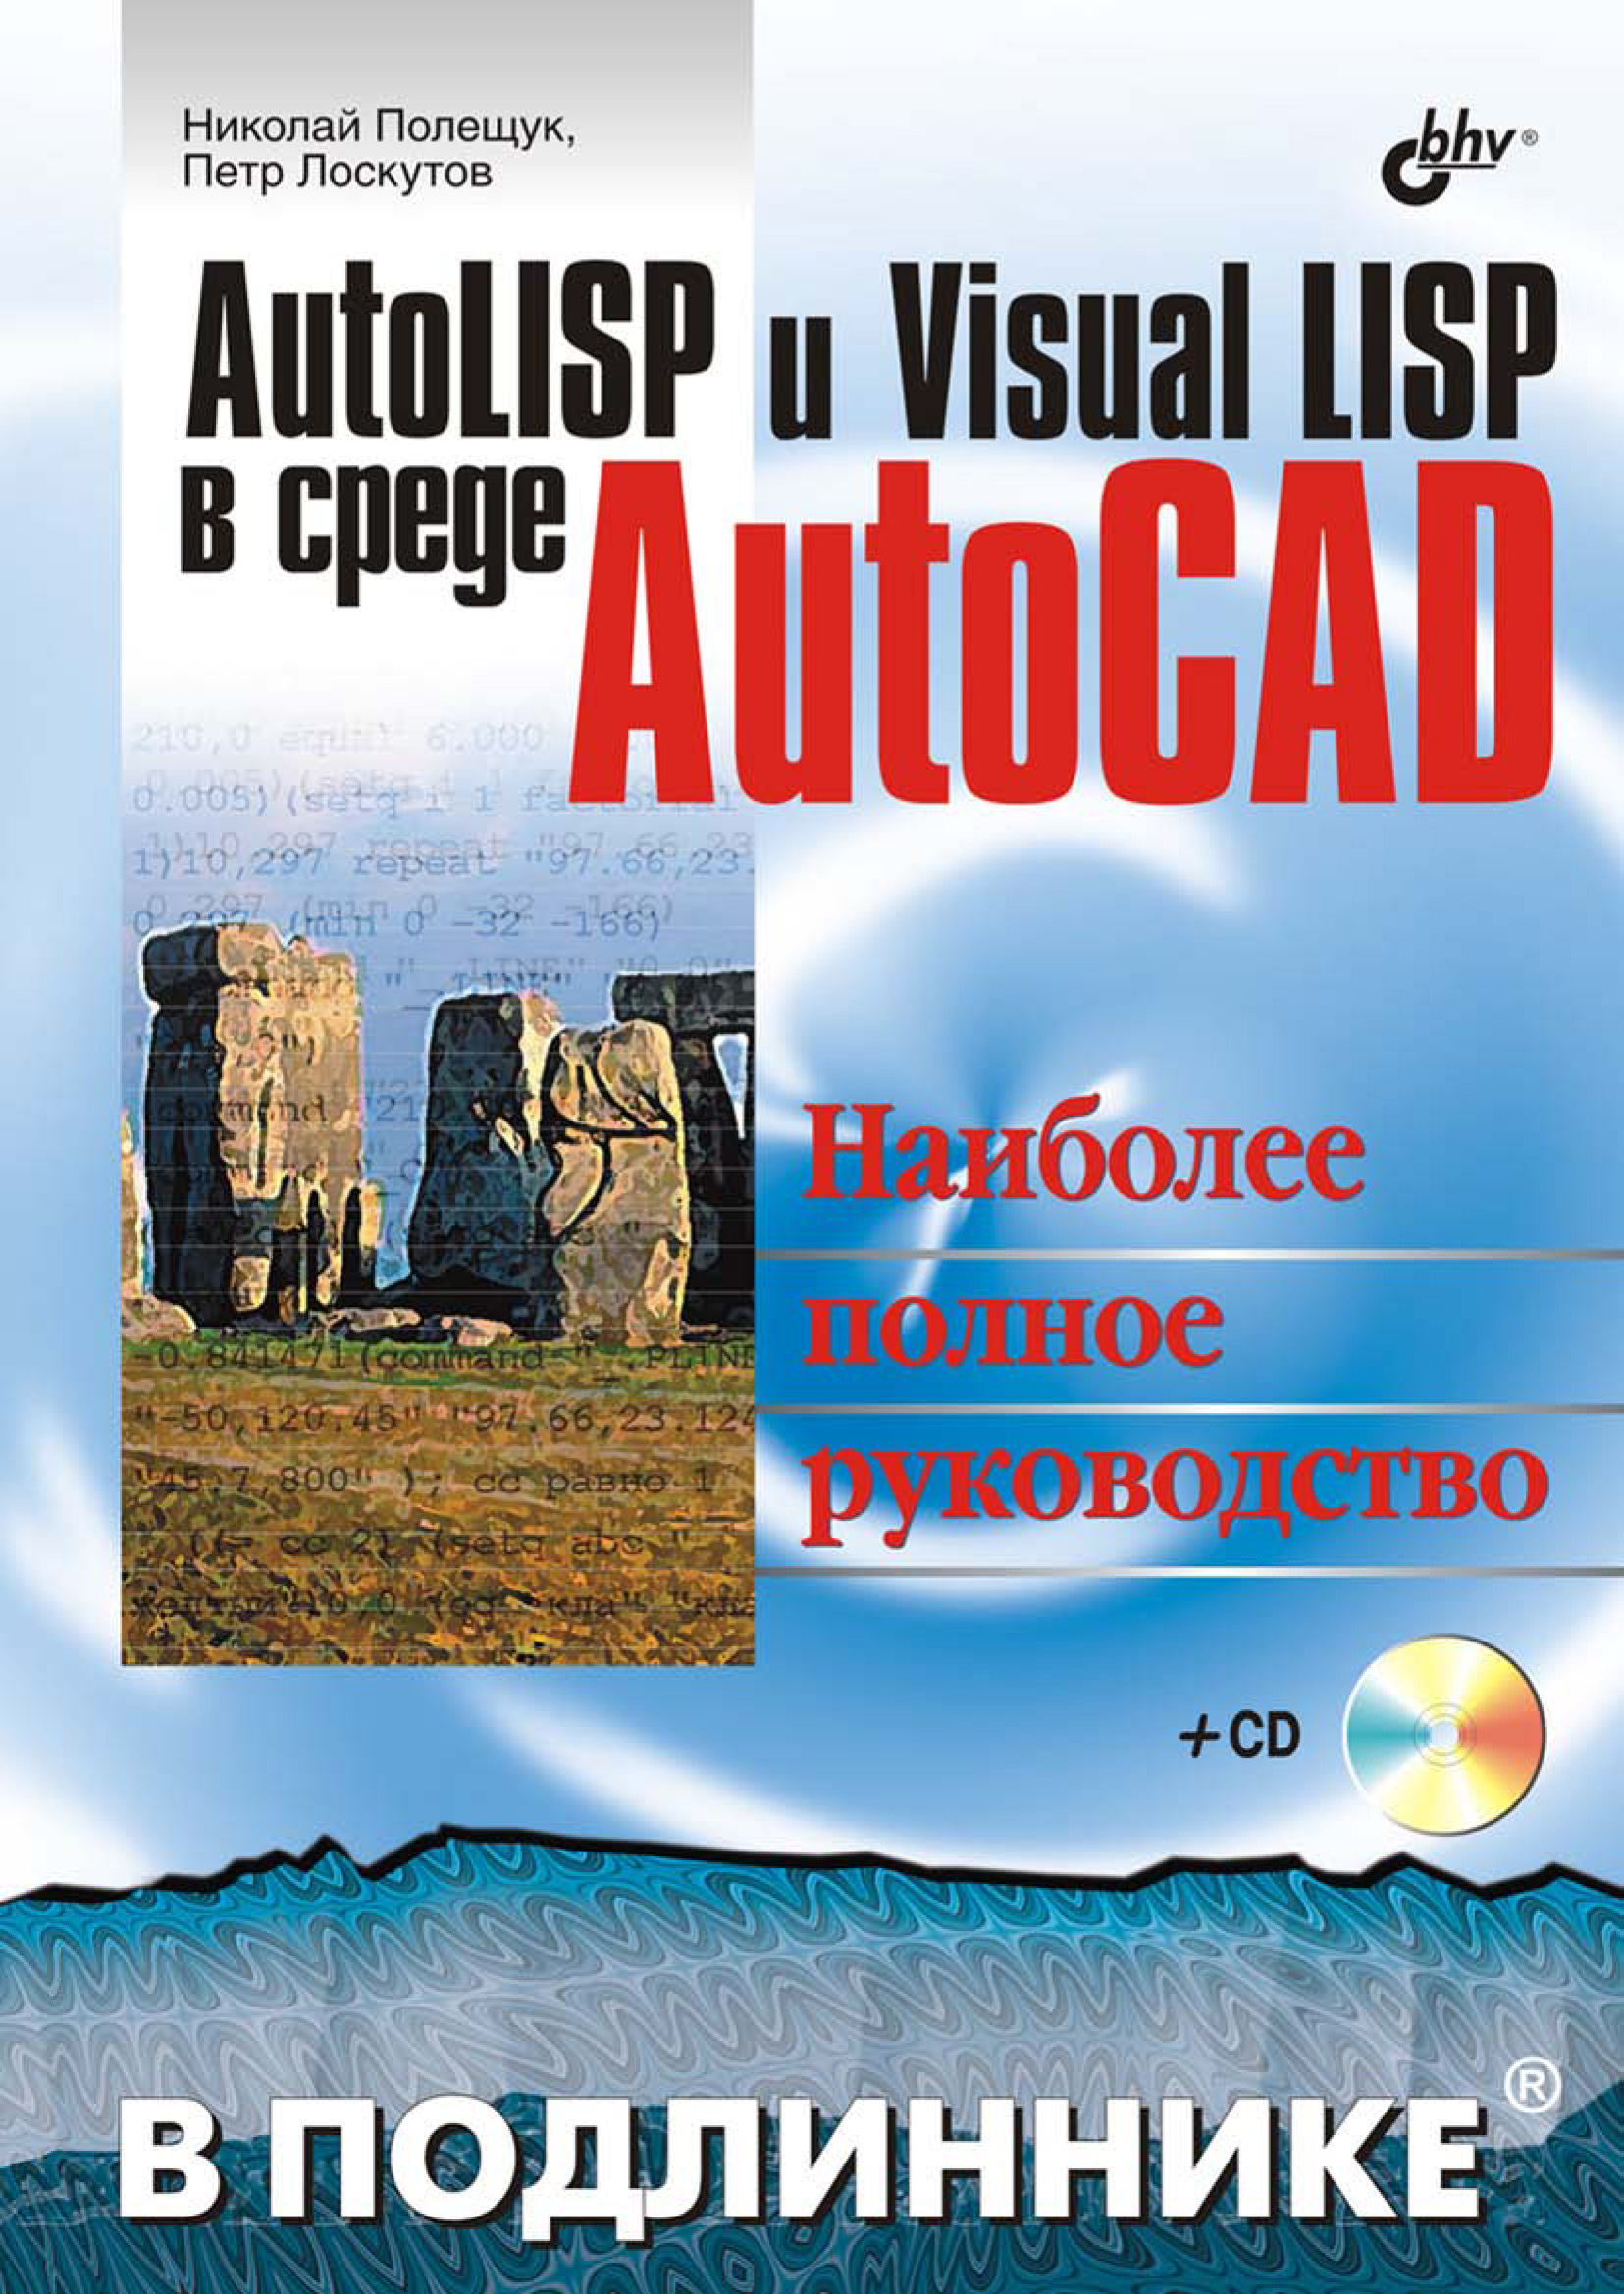 Книга В подлиннике. Наиболее полное руководство AutoLISP и Visual LISP в среде AutoCAD созданная Николай Полещук, Петр Лоскутов может относится к жанру программирование, программы. Стоимость электронной книги AutoLISP и Visual LISP в среде AutoCAD с идентификатором 6654099 составляет 263.90 руб.